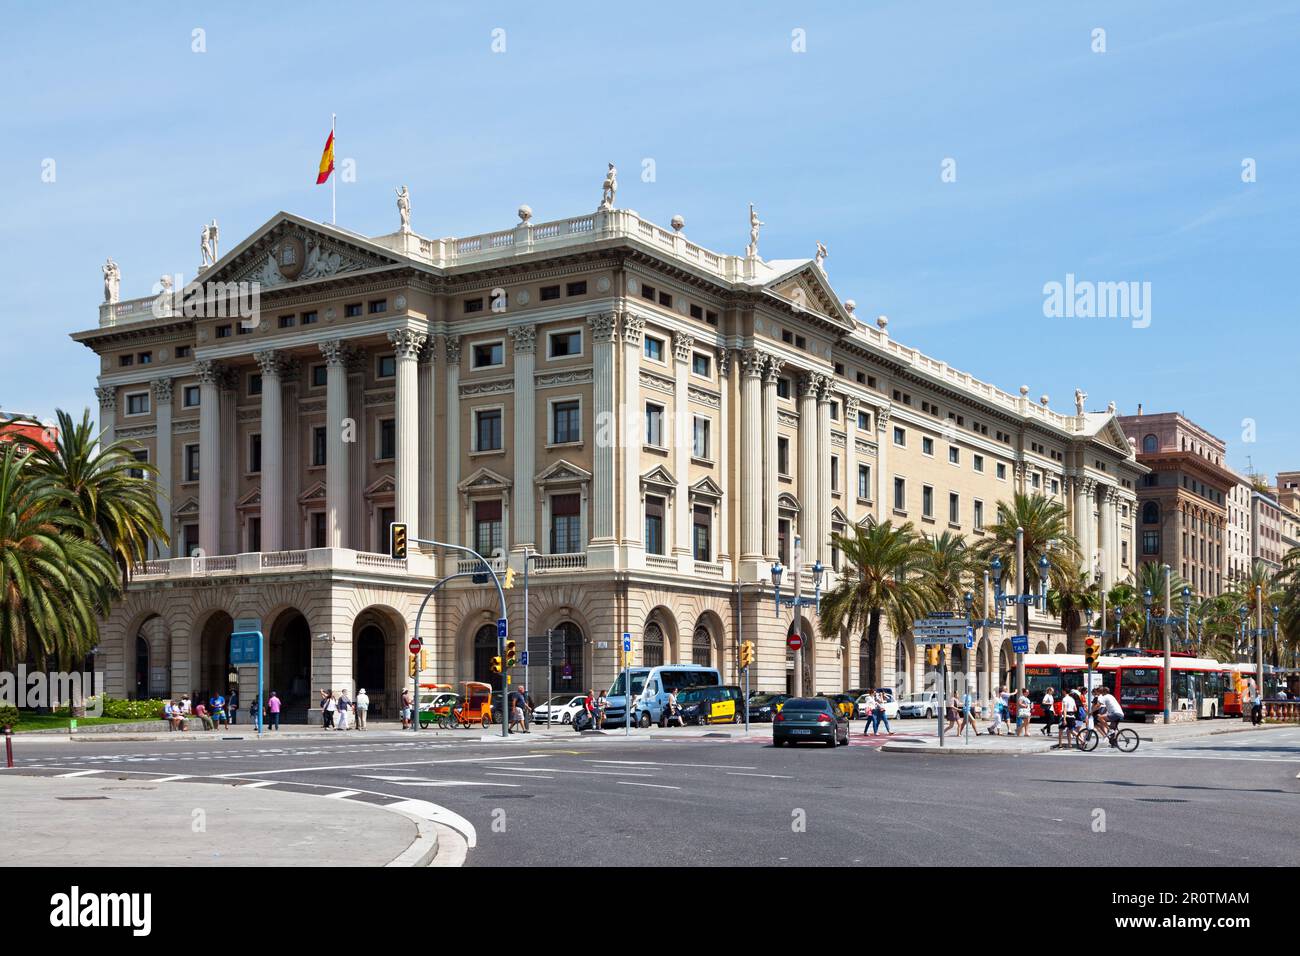 Barcellona, Spagna - Giugno 08 2018: Il Governo militare di Barcellona (Catalano: Gobierno Militar de Barcelona), a pochi metri dal Mirador de Colom, Foto Stock